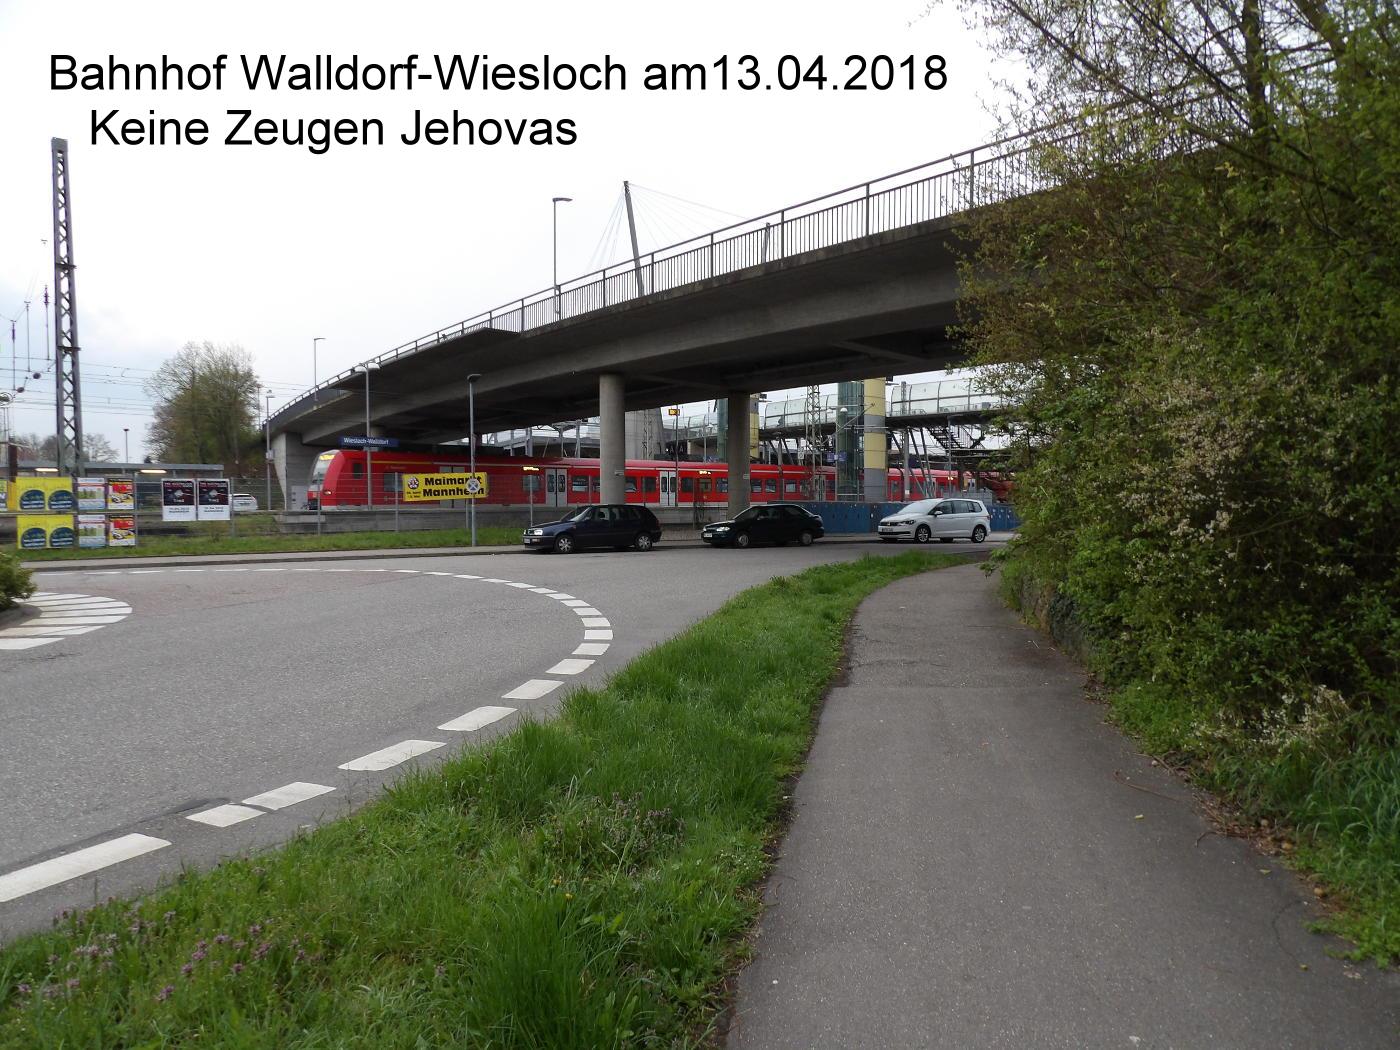 Zeugen Jehovas haben gelernt, dass sie freitags nicht mehr am Bahnhof Walldorf-Wiesloch aufzutauchen haben